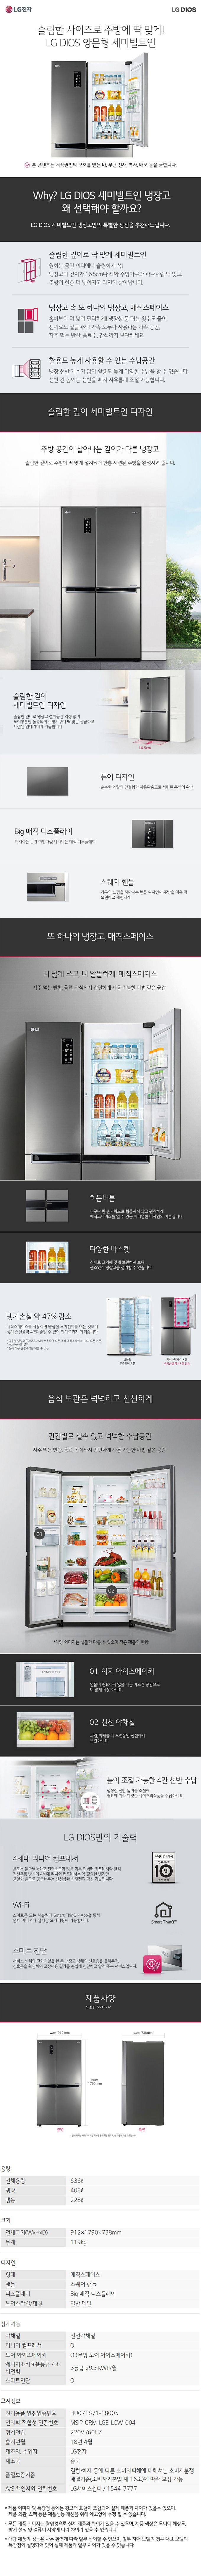 용산케이블 - LG 디오스 양문냉장고 (S631S32) 상세보기